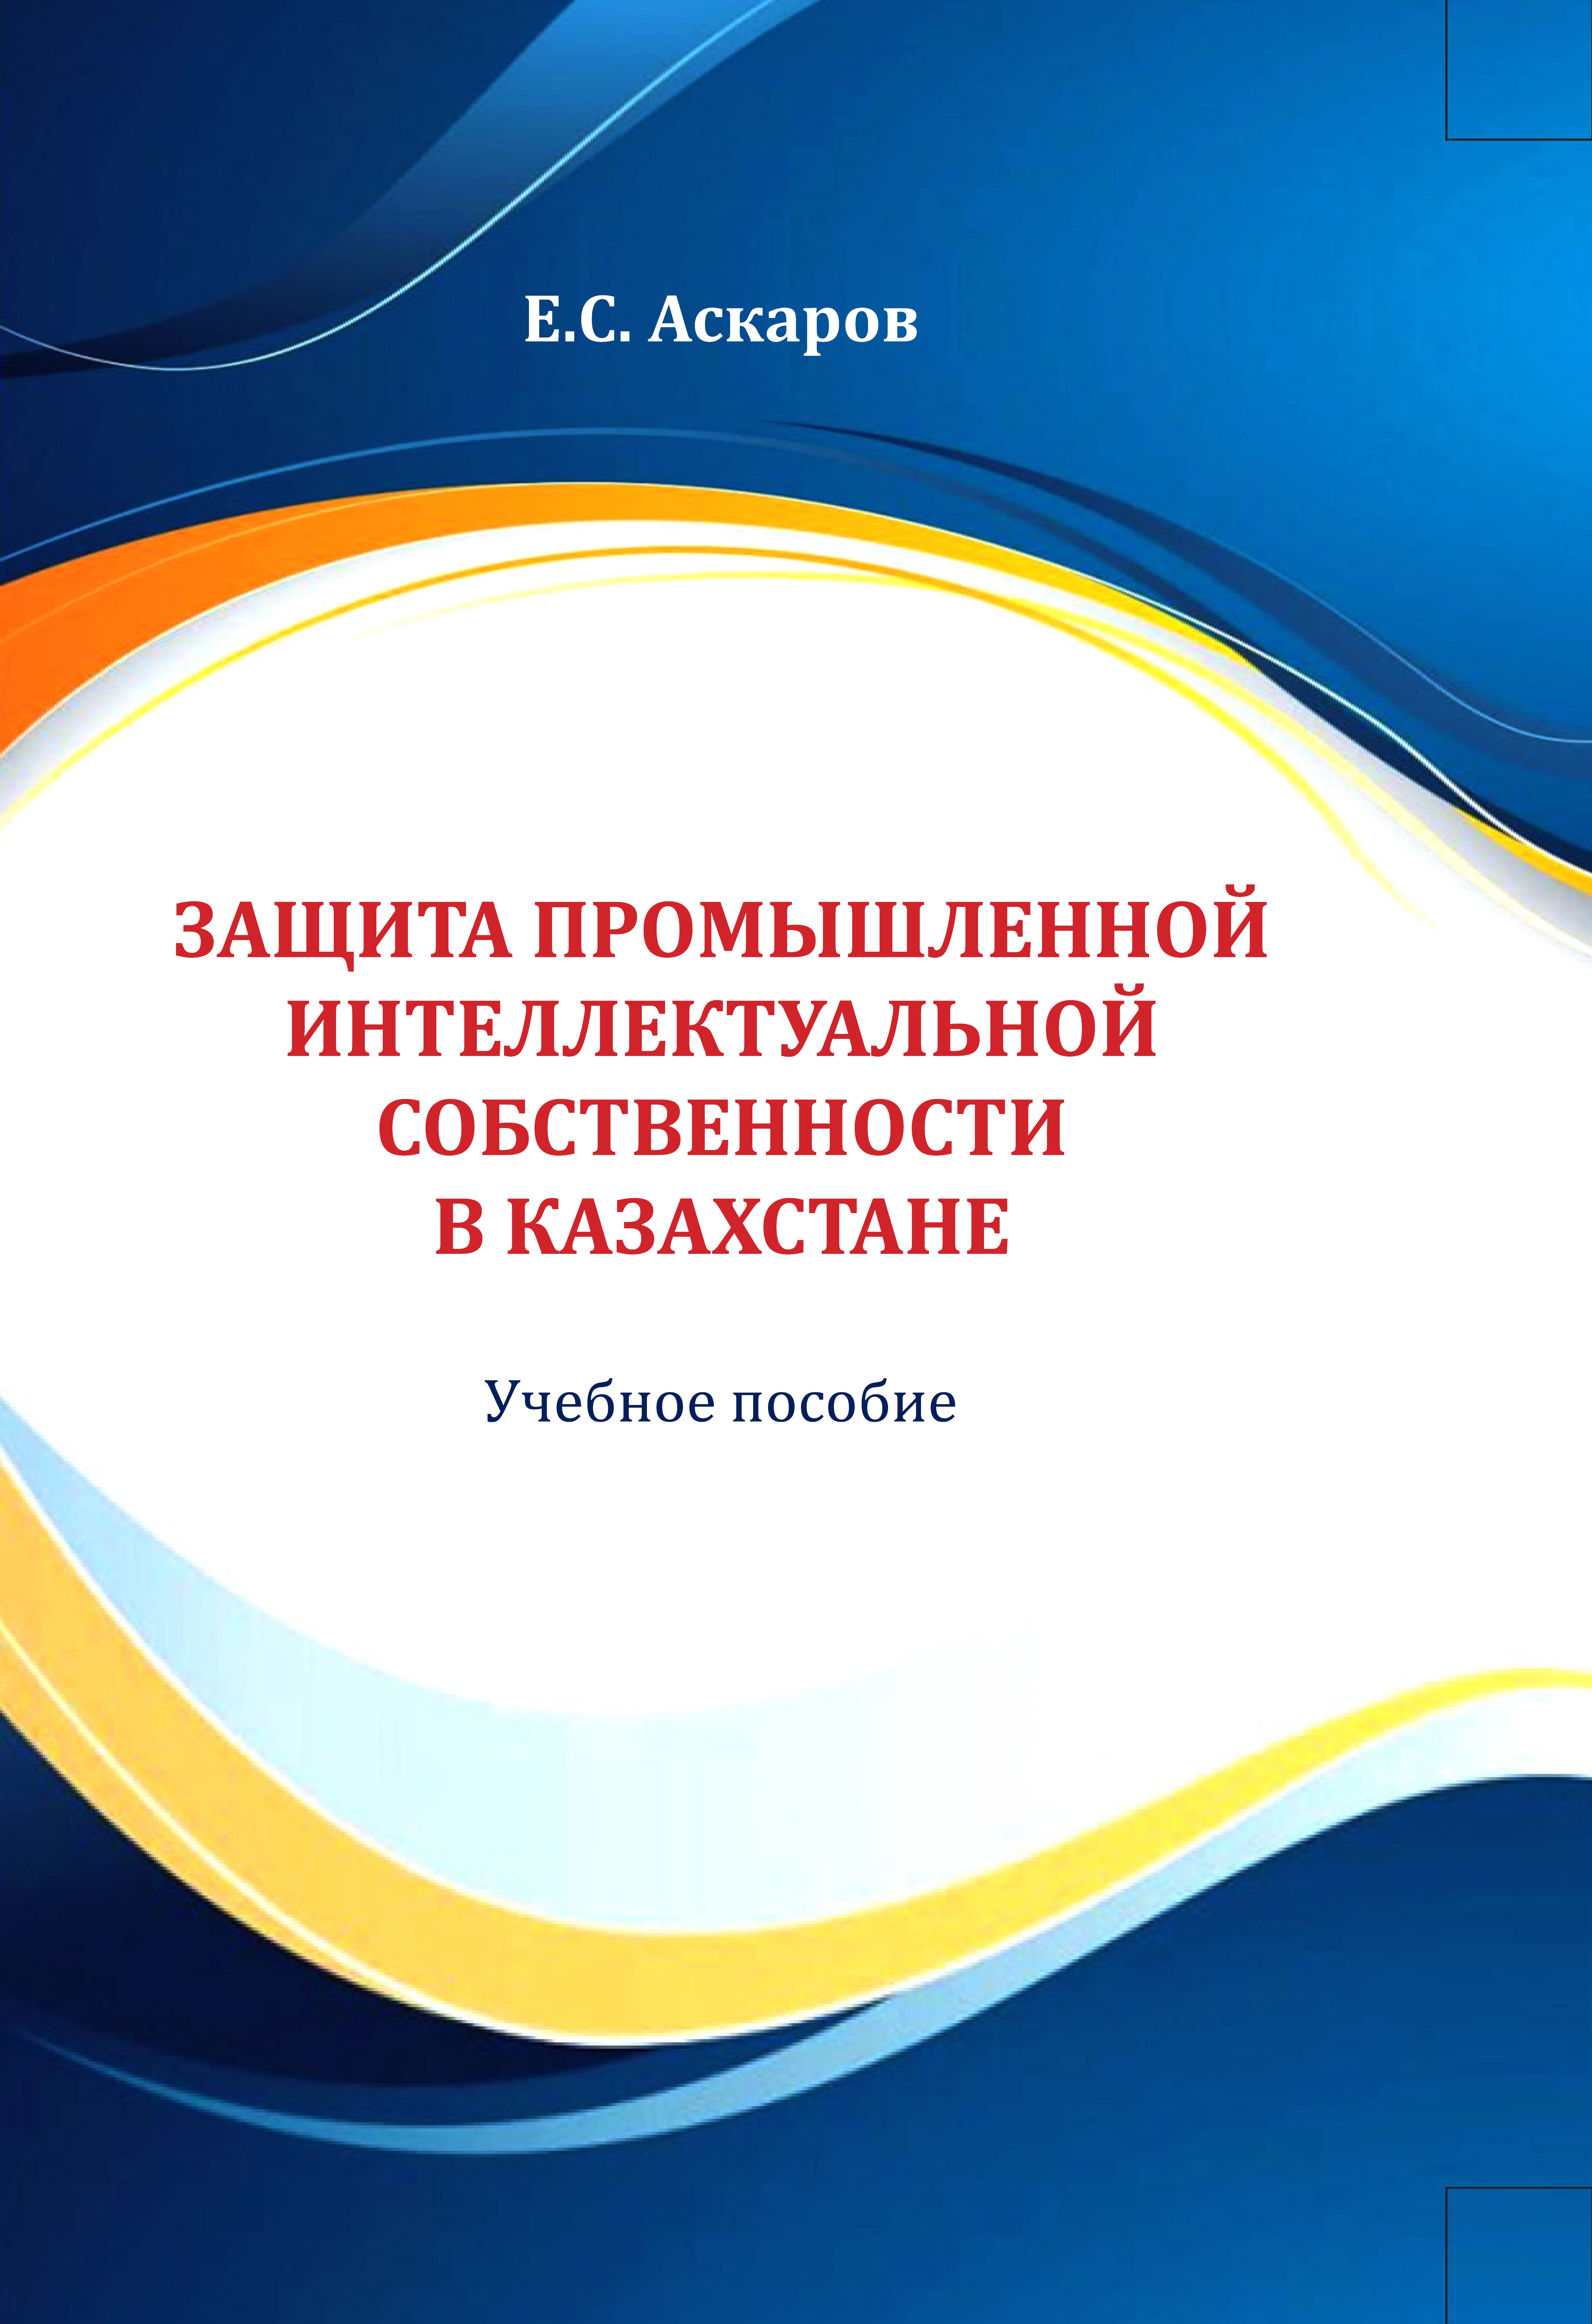 Защита промышленной интеллектуальной собствен- ности в Казахстане. Учебное пособие.